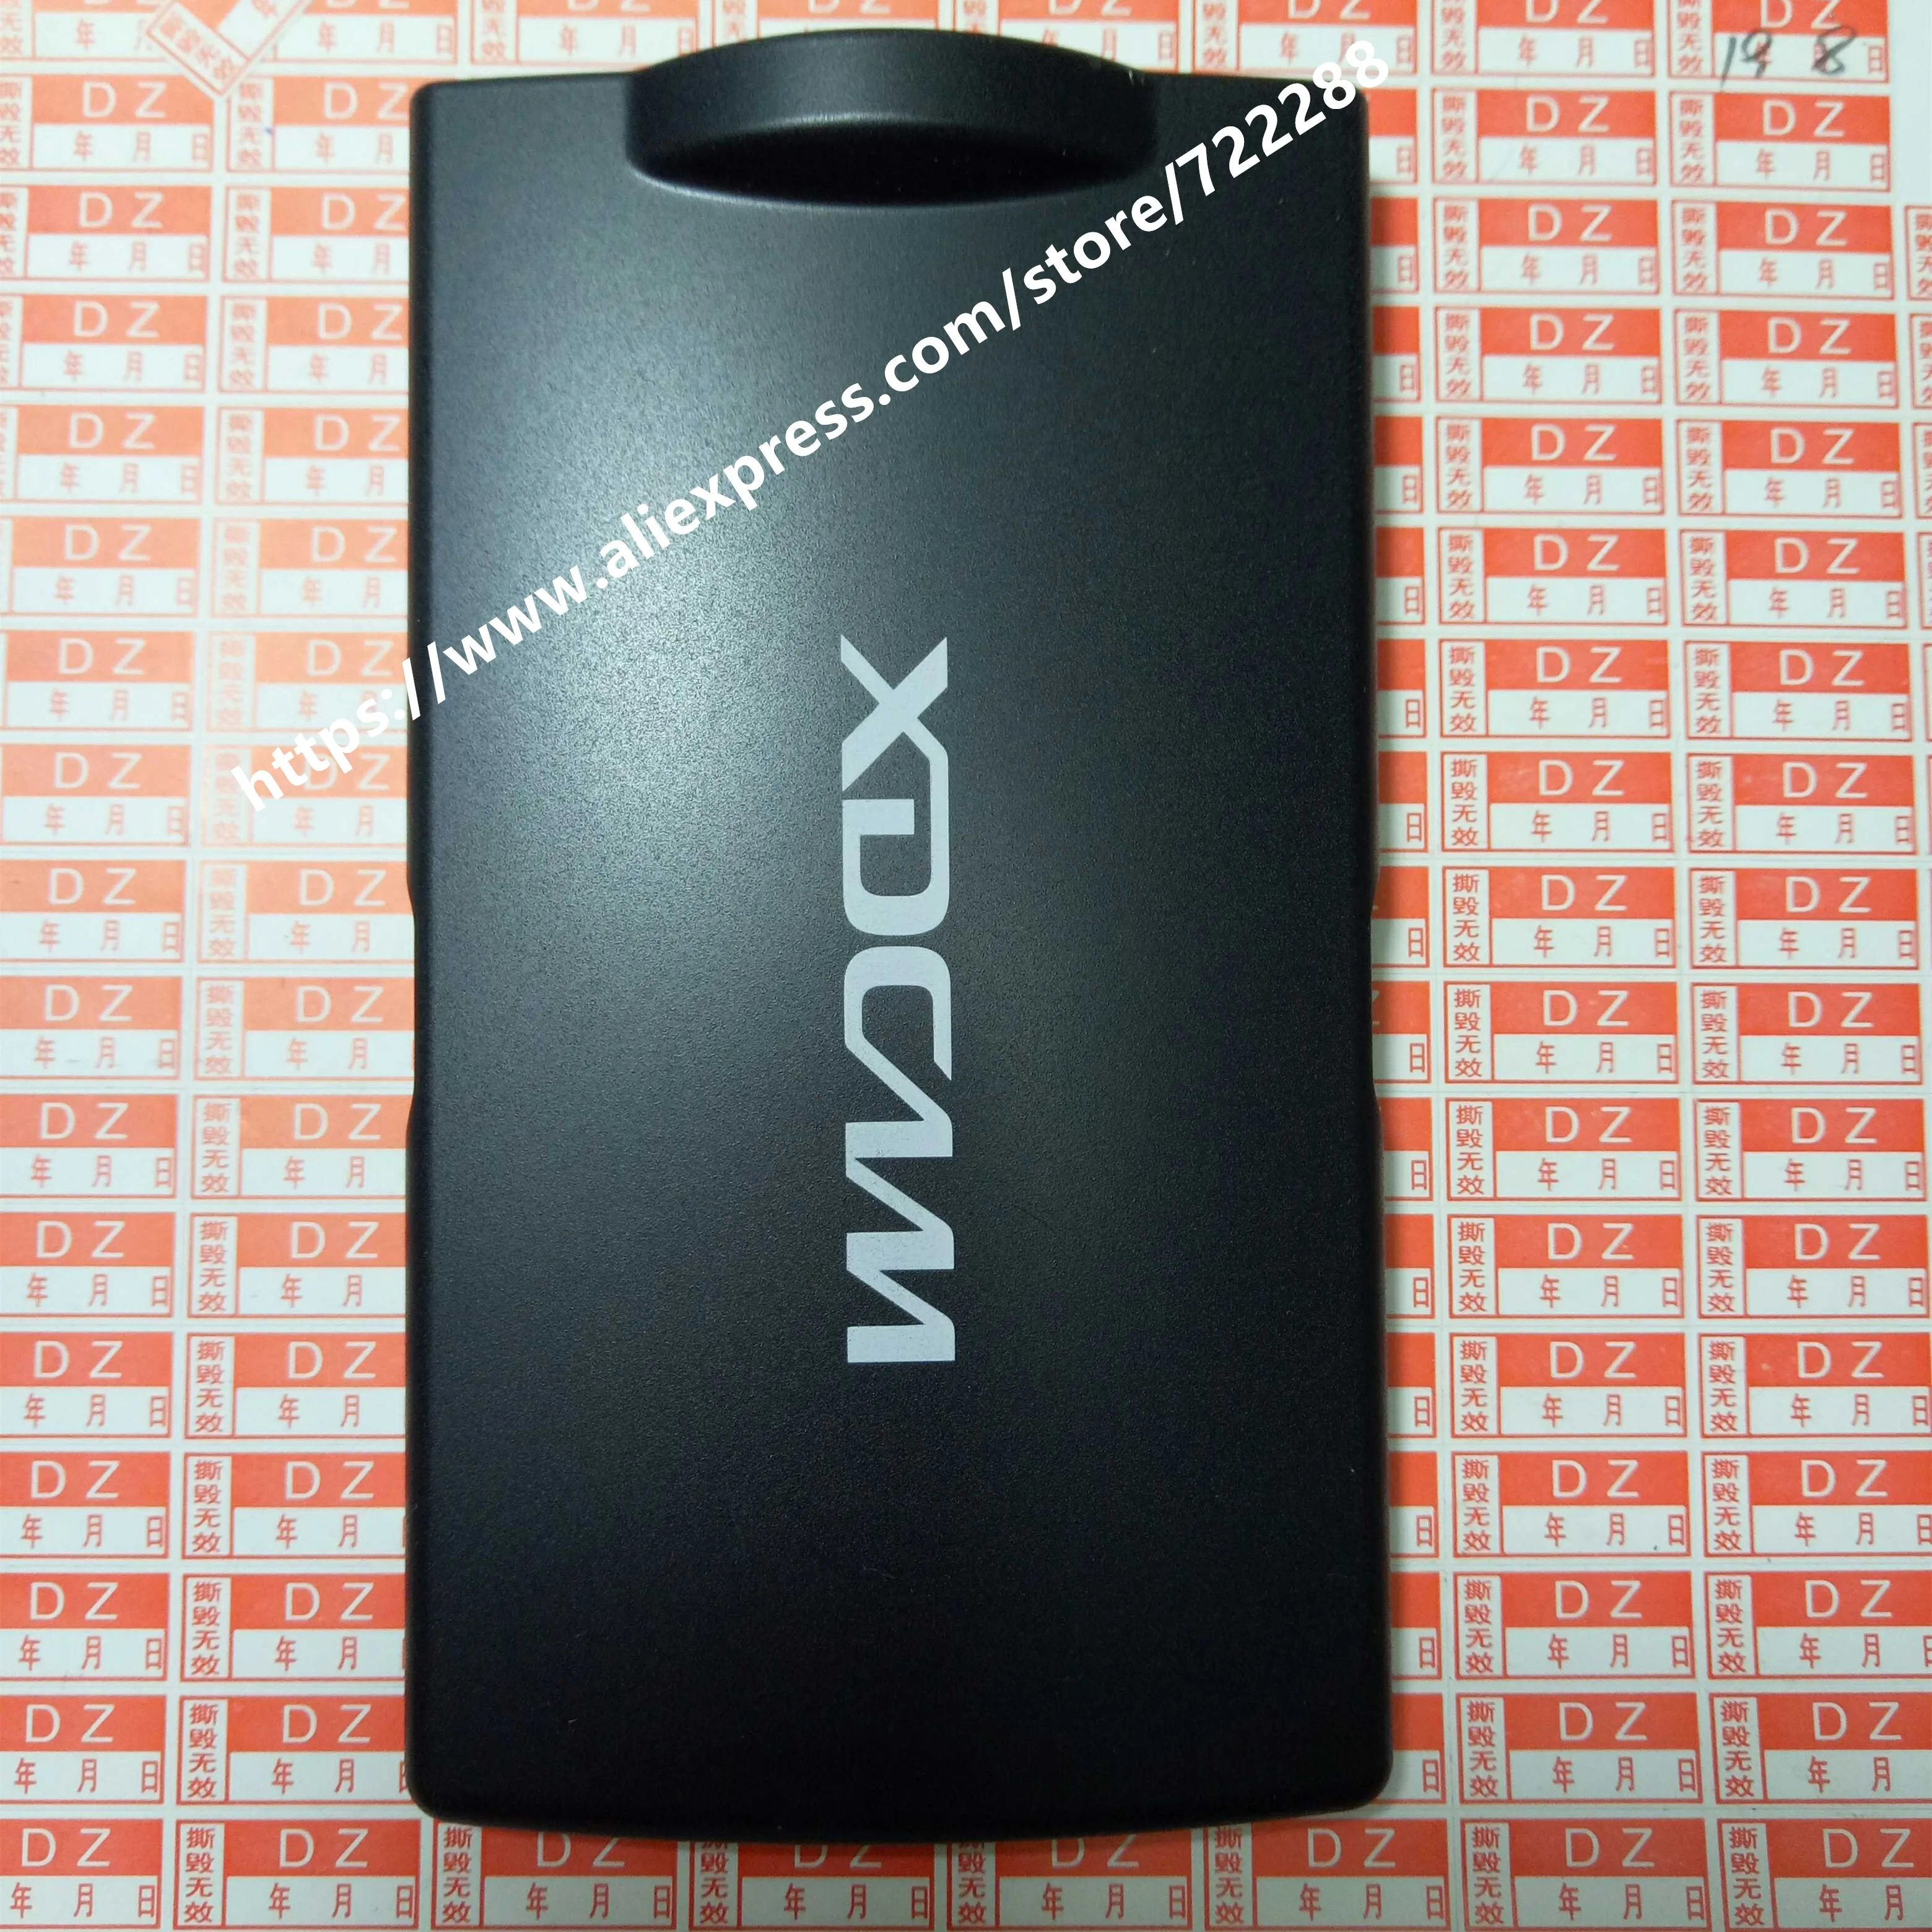 Tamir Parçaları Sony PXW-Z280 PXW-Z280V PXW-Z280T PXW-Z190 PXW-Z190V PXW-Z190T lcd ekran Arka Kılıf Koruyucu Kapak Ünitesi - 0